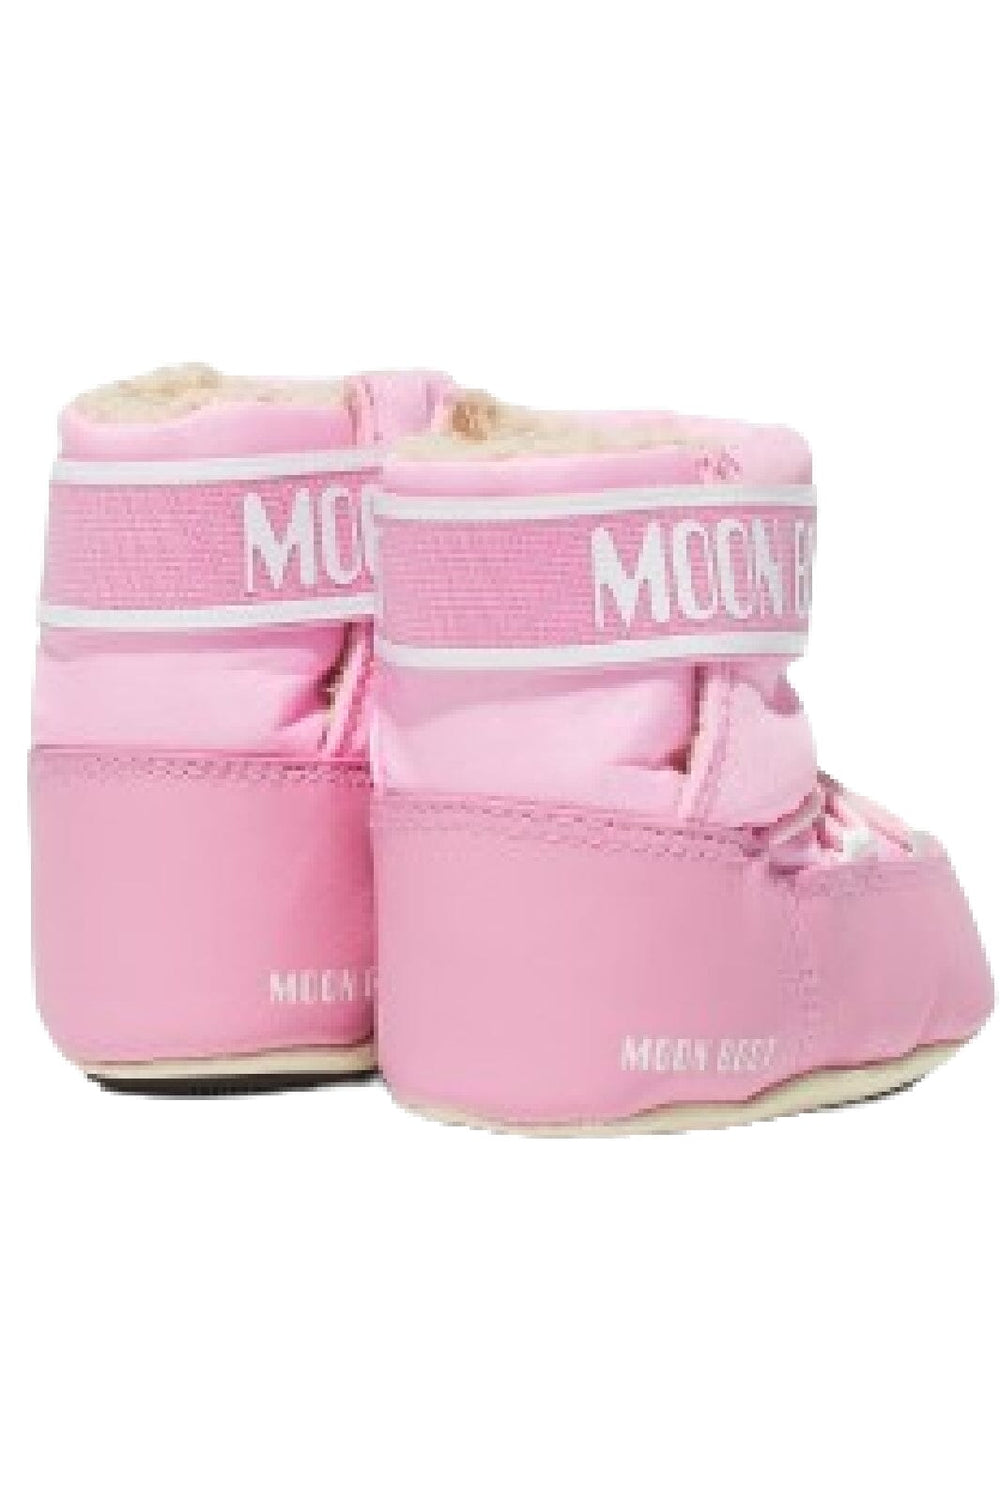 Moon Boot - Mb Crib Nylon - 004 Light Pink Støvler 